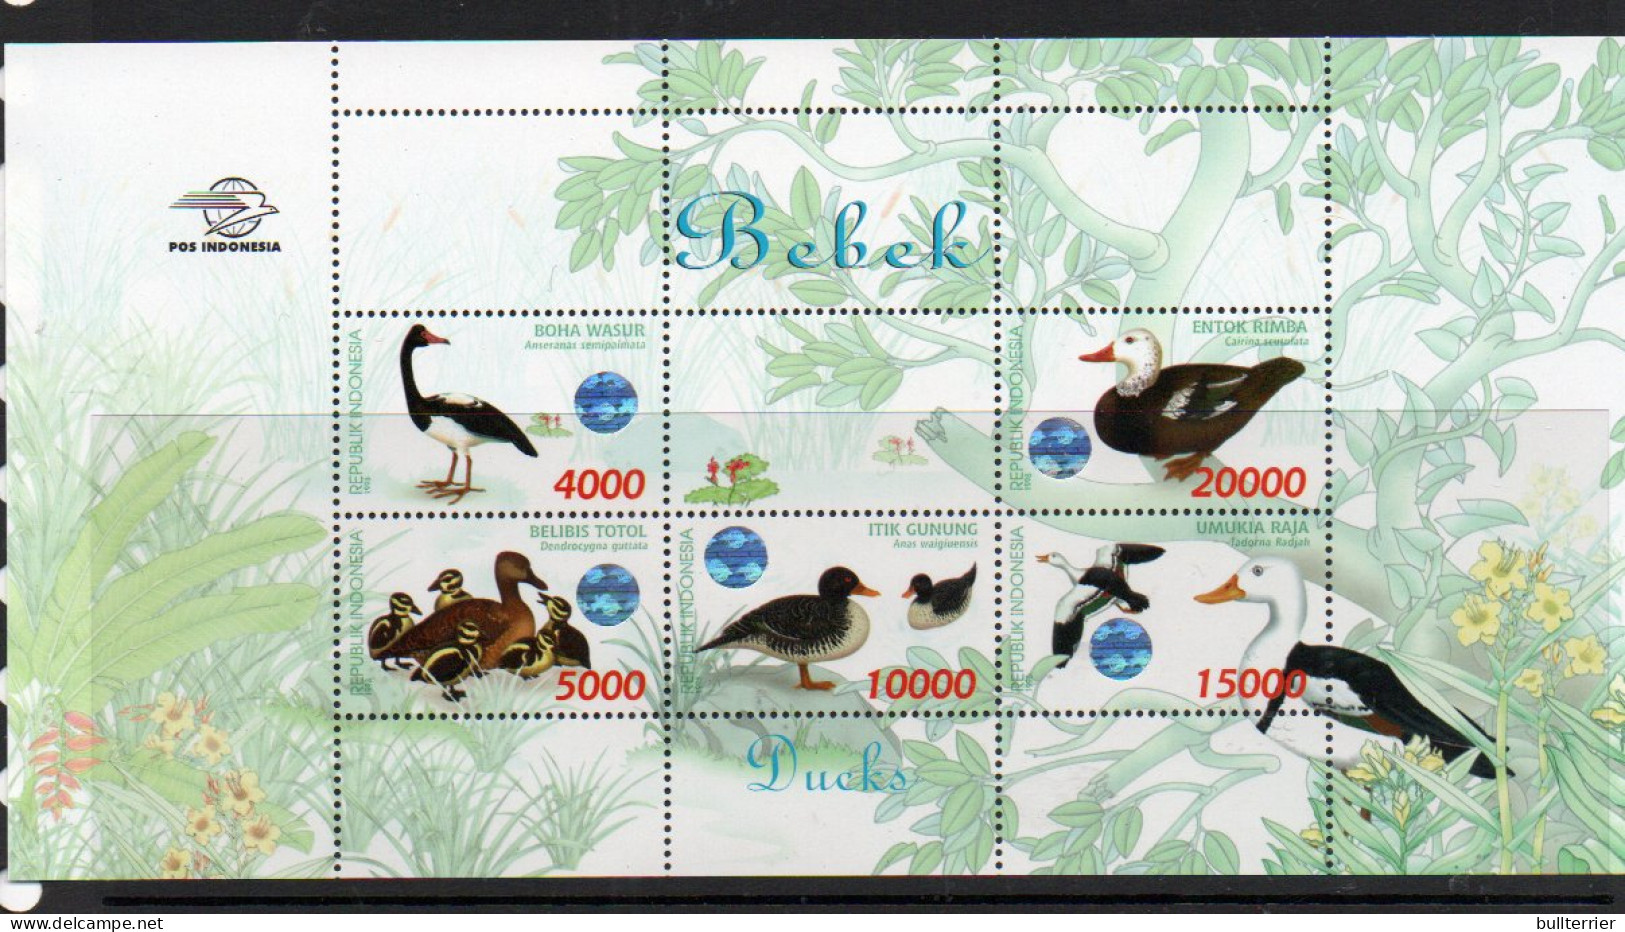 BIRDS - INDONESIA-  1998- WATERFOWL SOUVENIR SHEET  MINT NEVER HINGED,SG £30 - Duiven En Duifachtigen